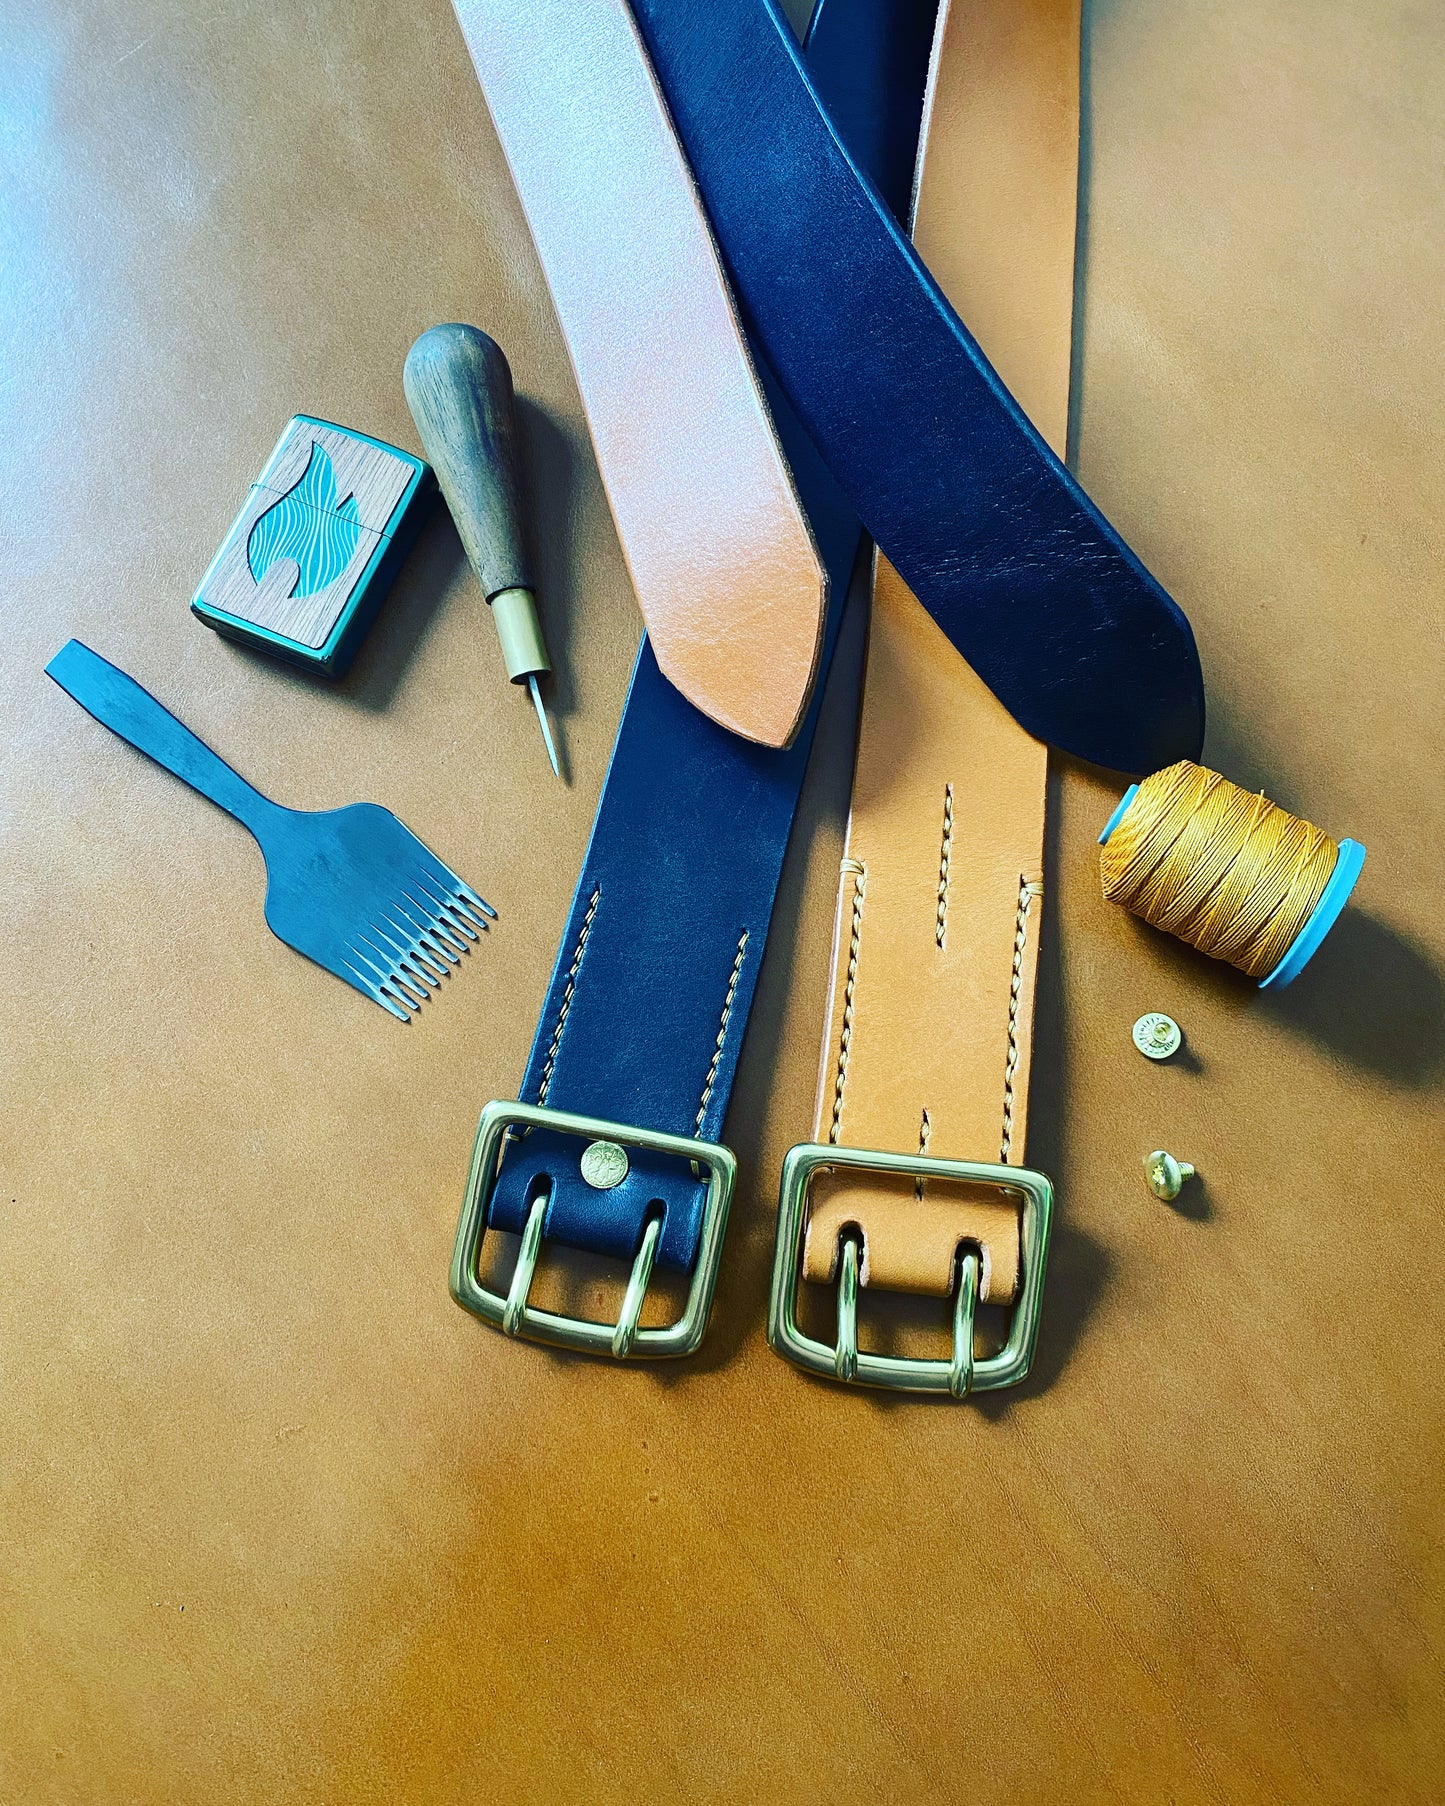 Cinturón de piel fabricado en piel "Roble Hermann" | Color - Marrón oscuro